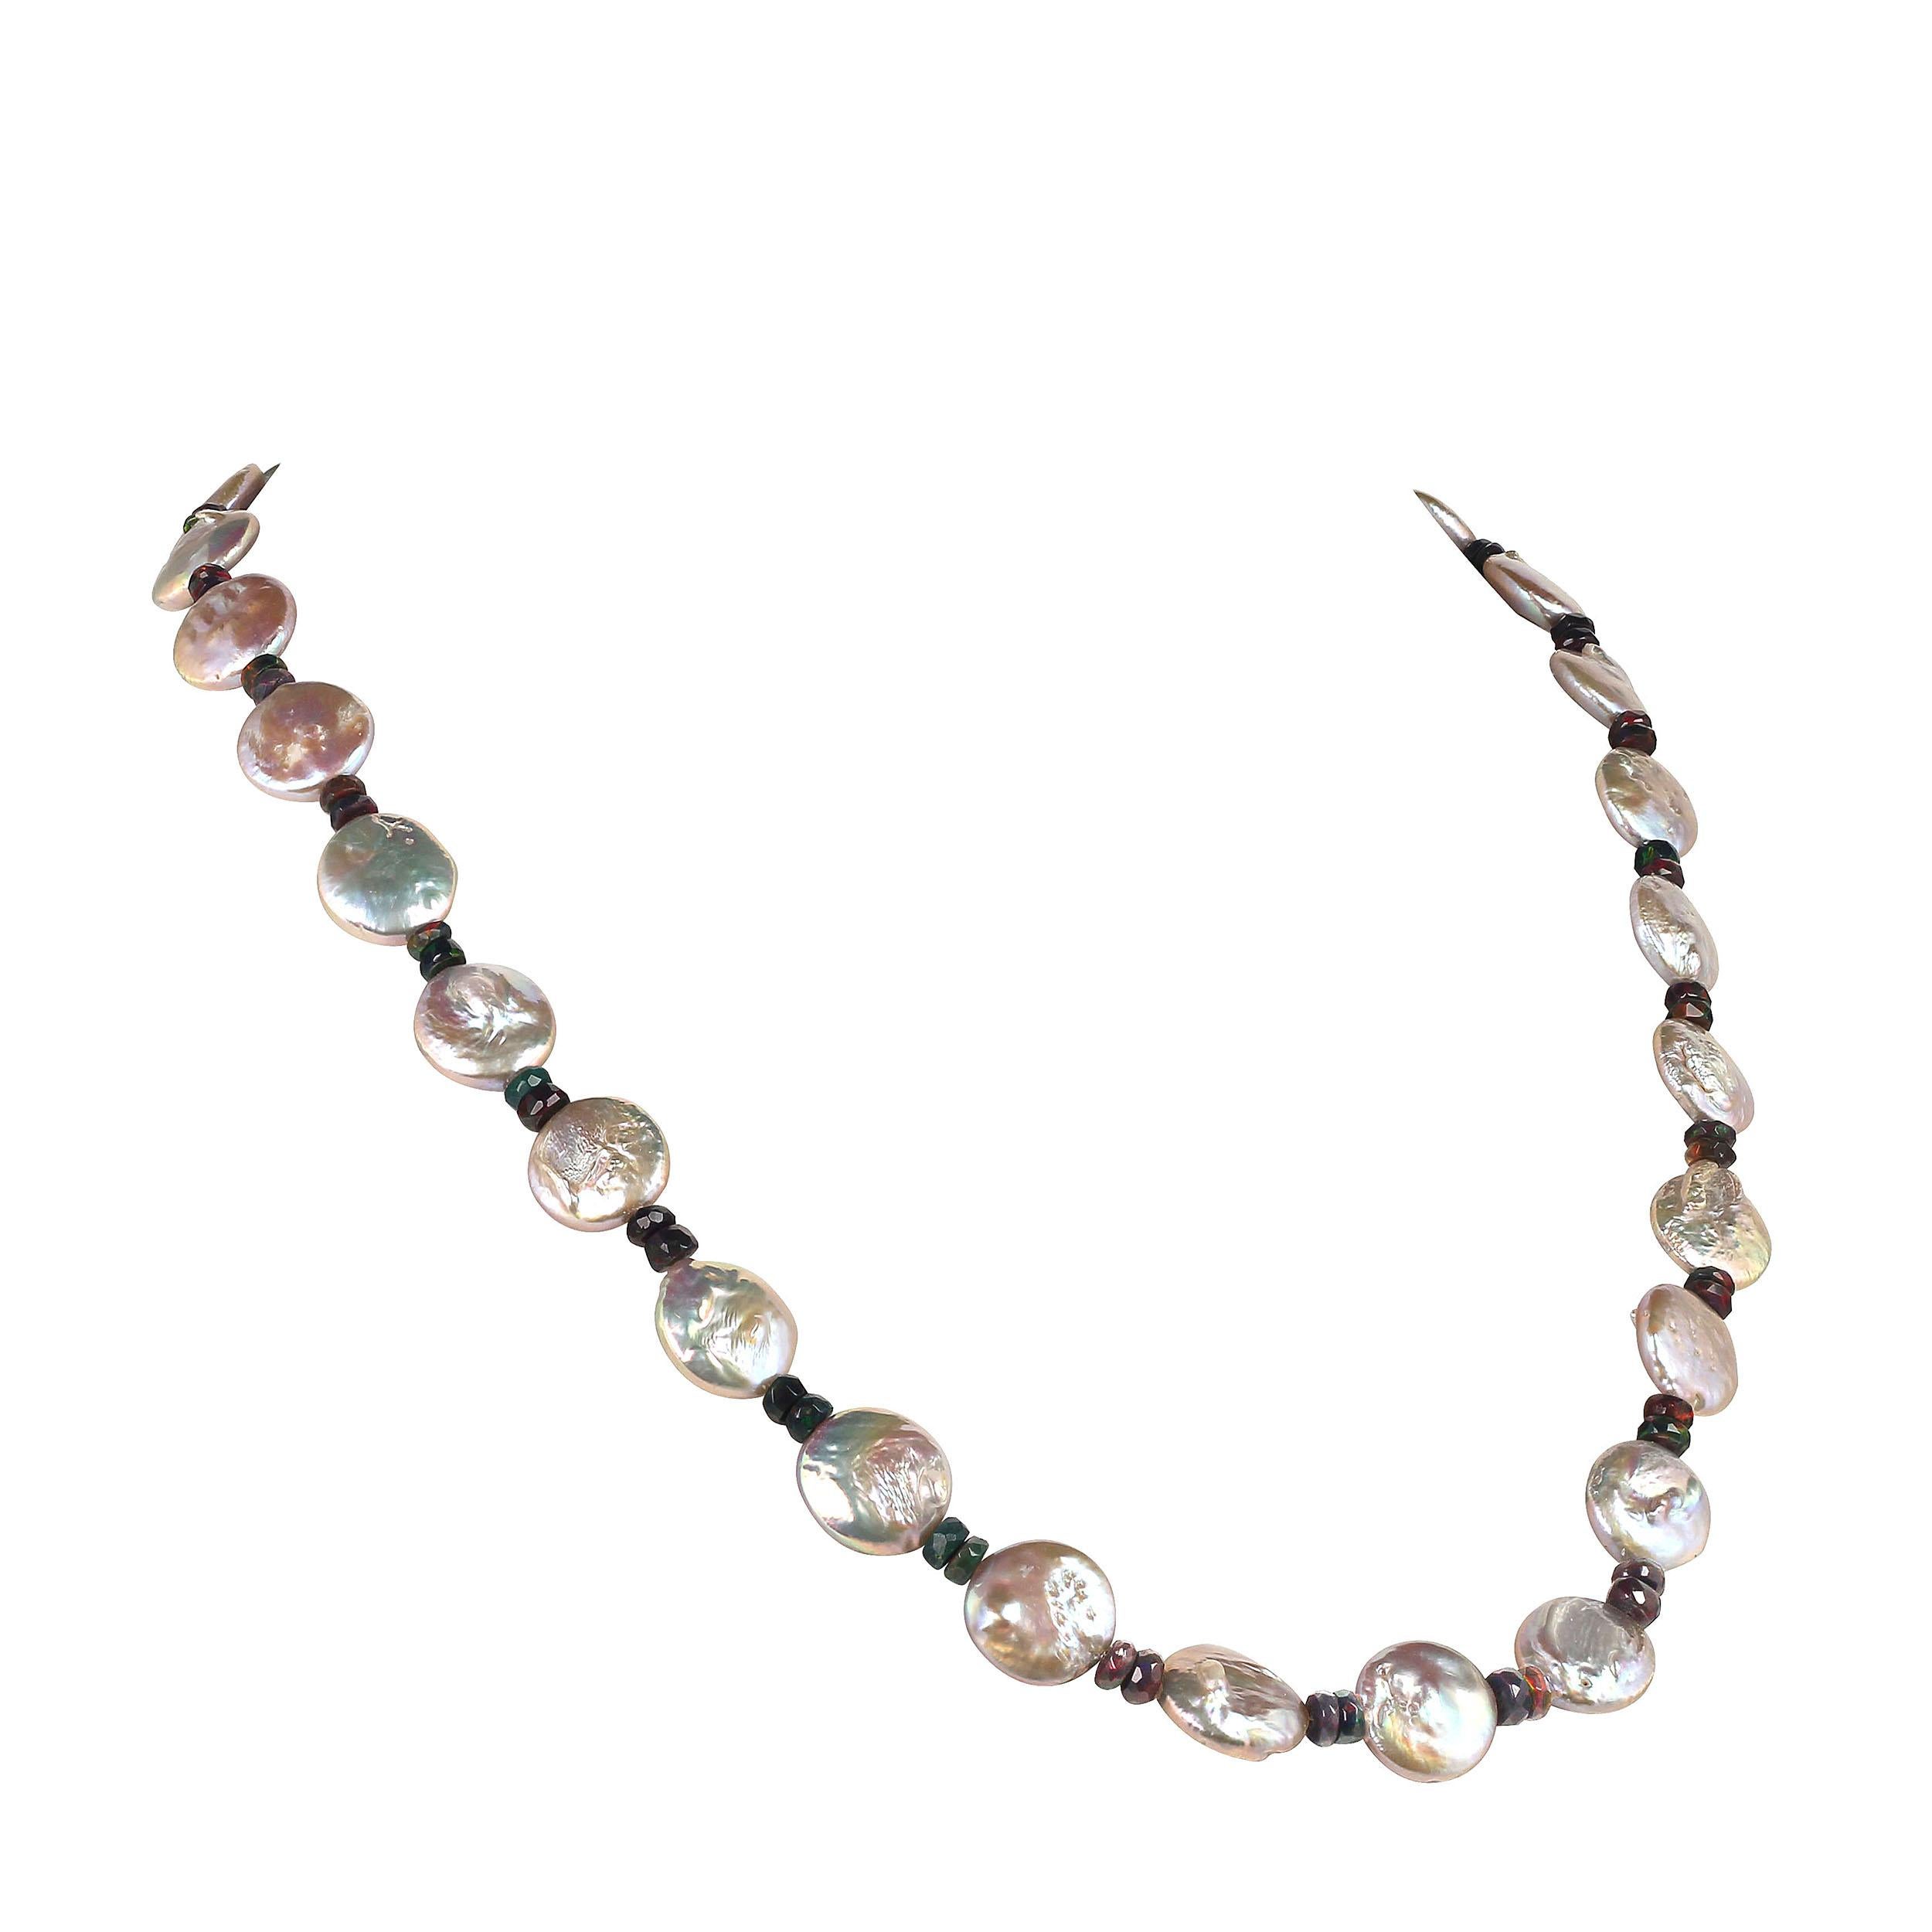 weil Sie es verdienen, schöne Perlen zu besitzen

Atemberaubend schillernde silberne Münzperlen und blinkende facettierte Rondellen aus schwarzem Opal ergänzen  in dieser schönen 22-Zoll-Halskette zusammen.  Die Black Opals, 5MM, haben verschiedene